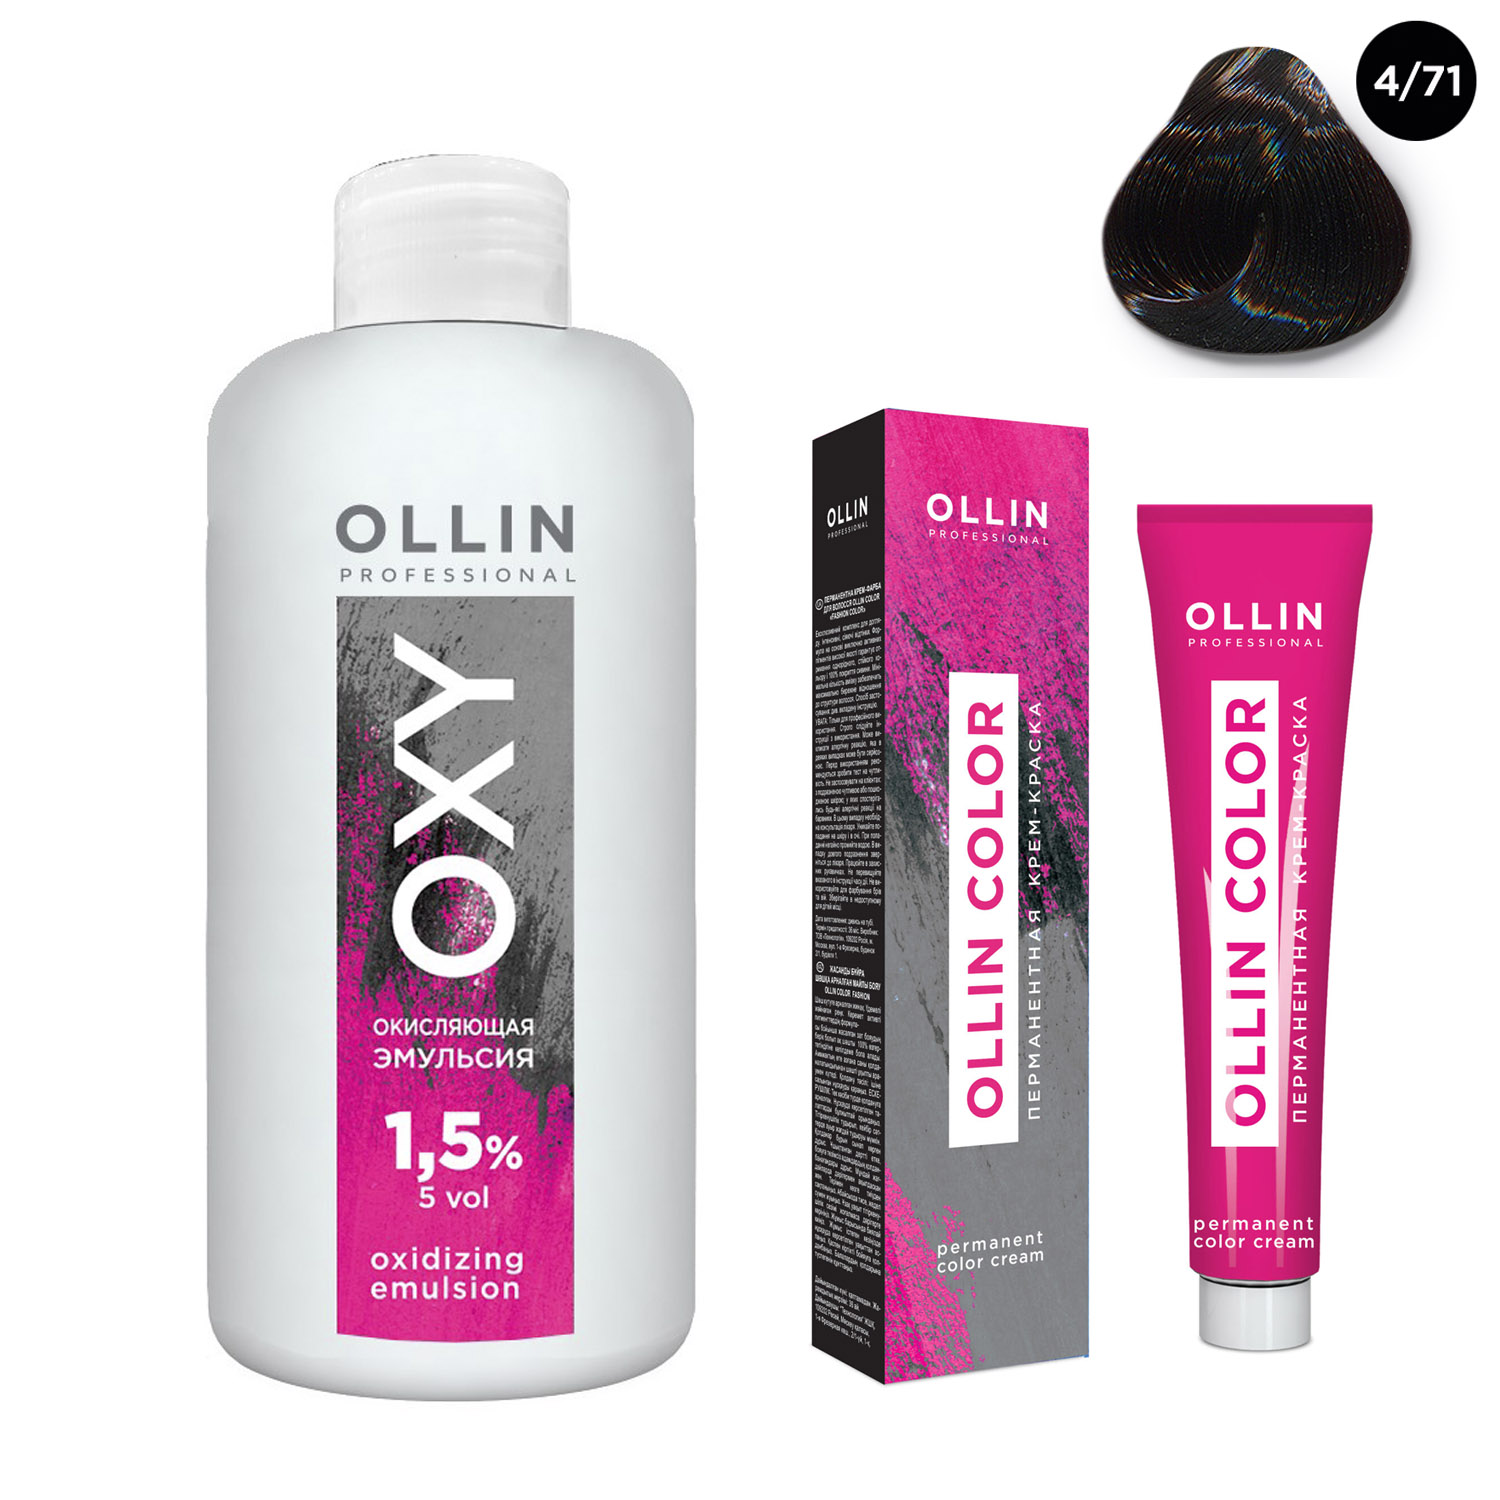 Купить Ollin Professional Набор Перманентная крем-краска для волос Ollin Color оттенок 4/71 шатен коричнево-пепельный 100 мл + Окисляющая эмульсия Oxy 1, 5% 150 мл (Ollin Professional, Ollin Color), Россия